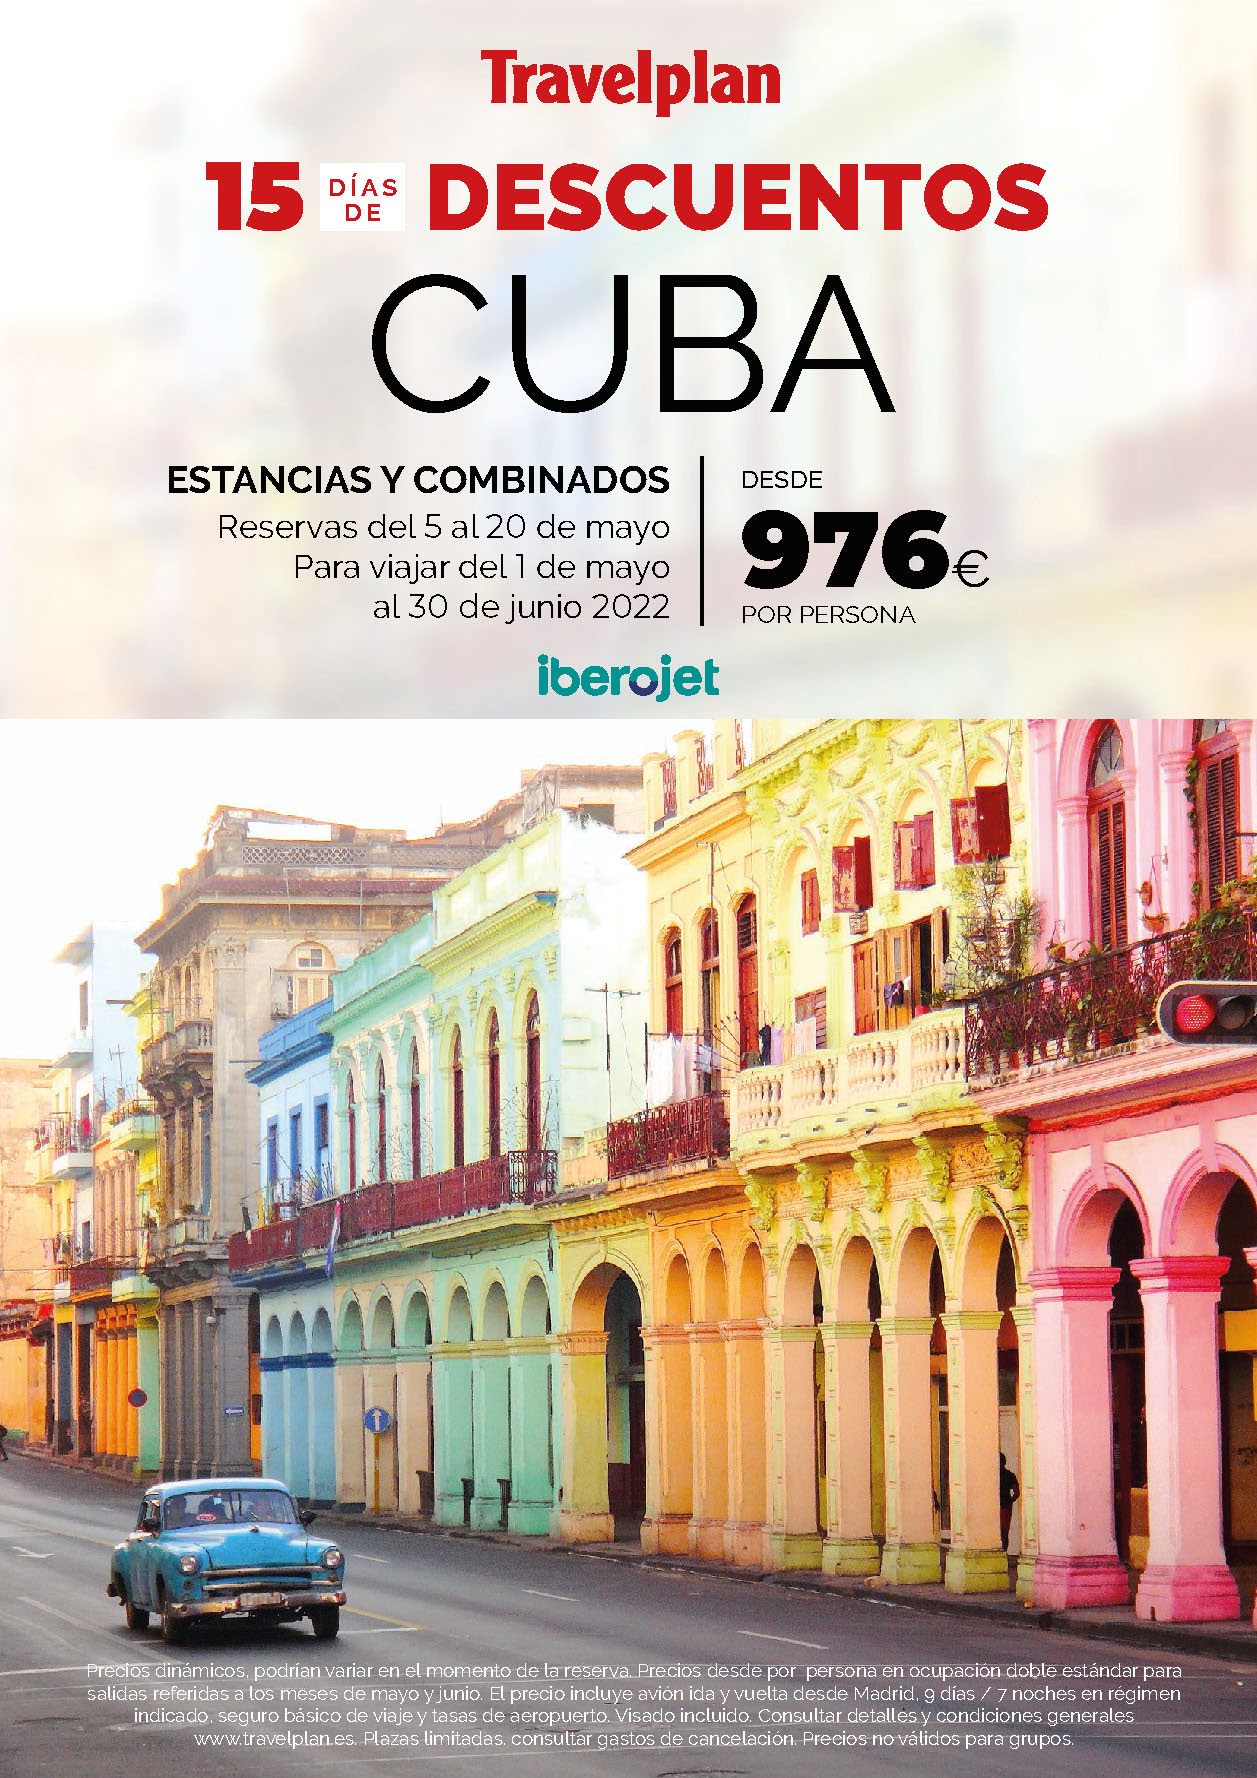 Oferta Travelplan Mayo 2022 Estancias y Combinados en Cuba salidas en Mayo y Junio 2022